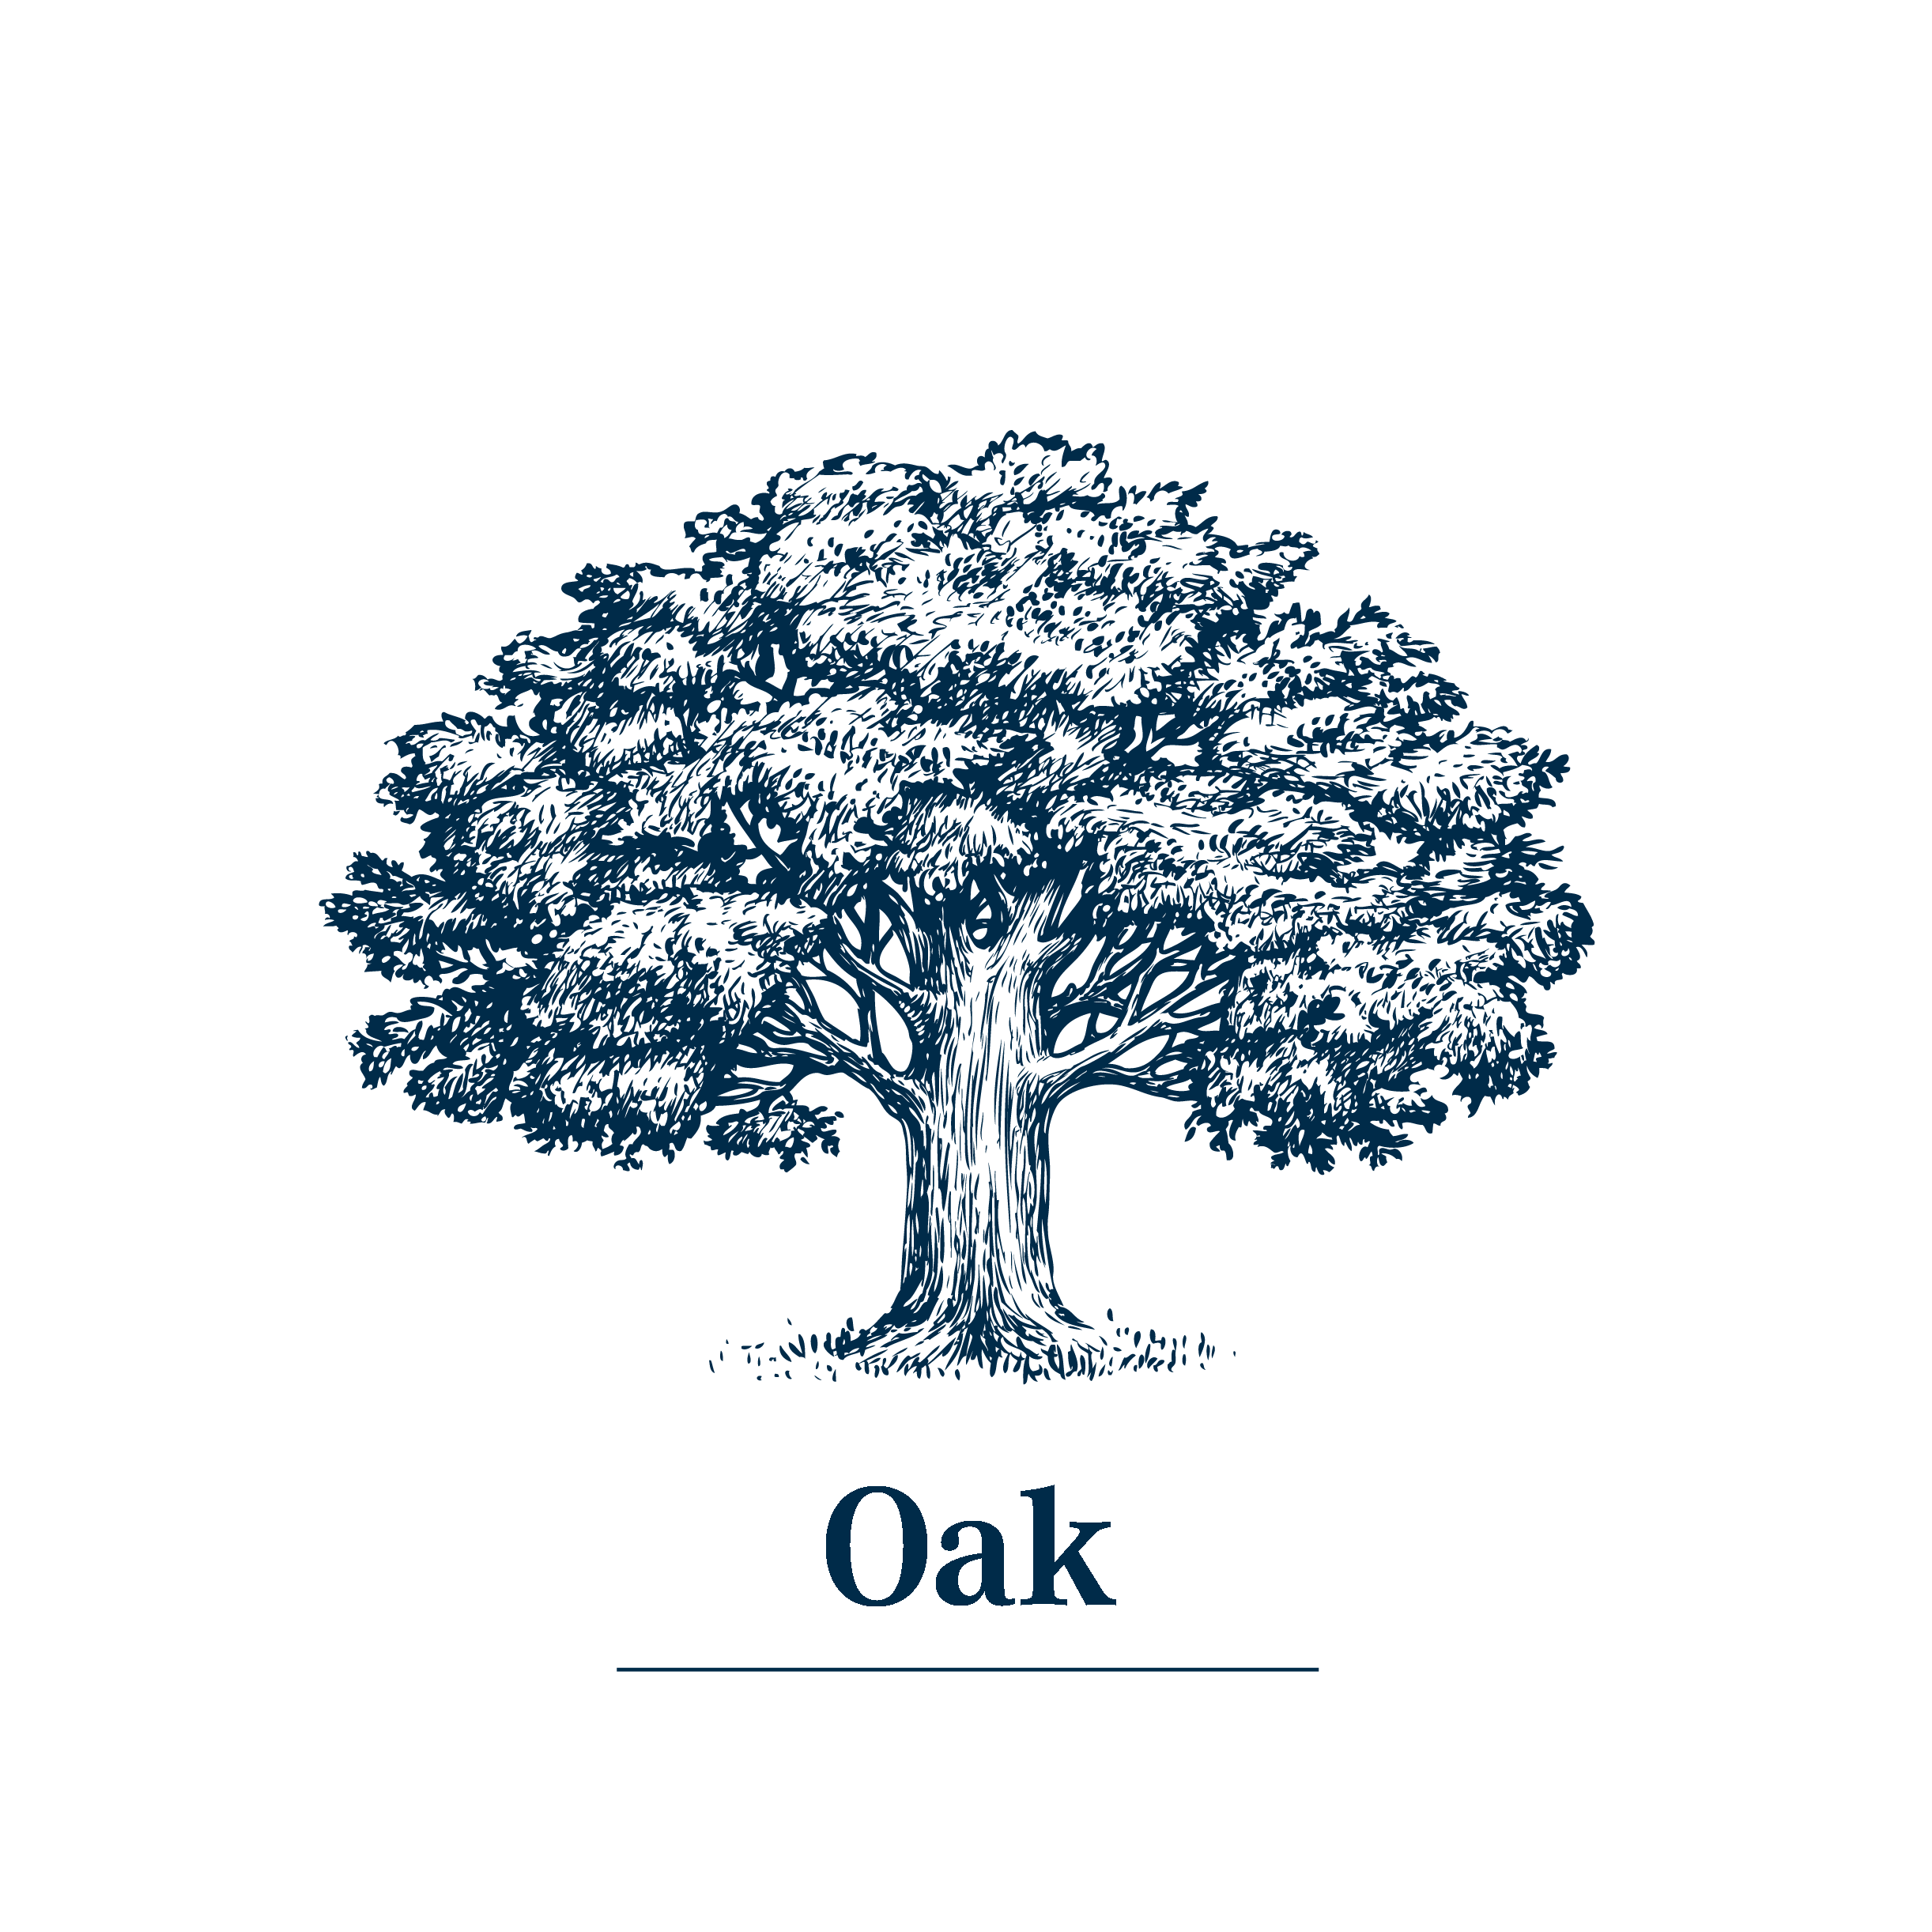 Type of wood oak